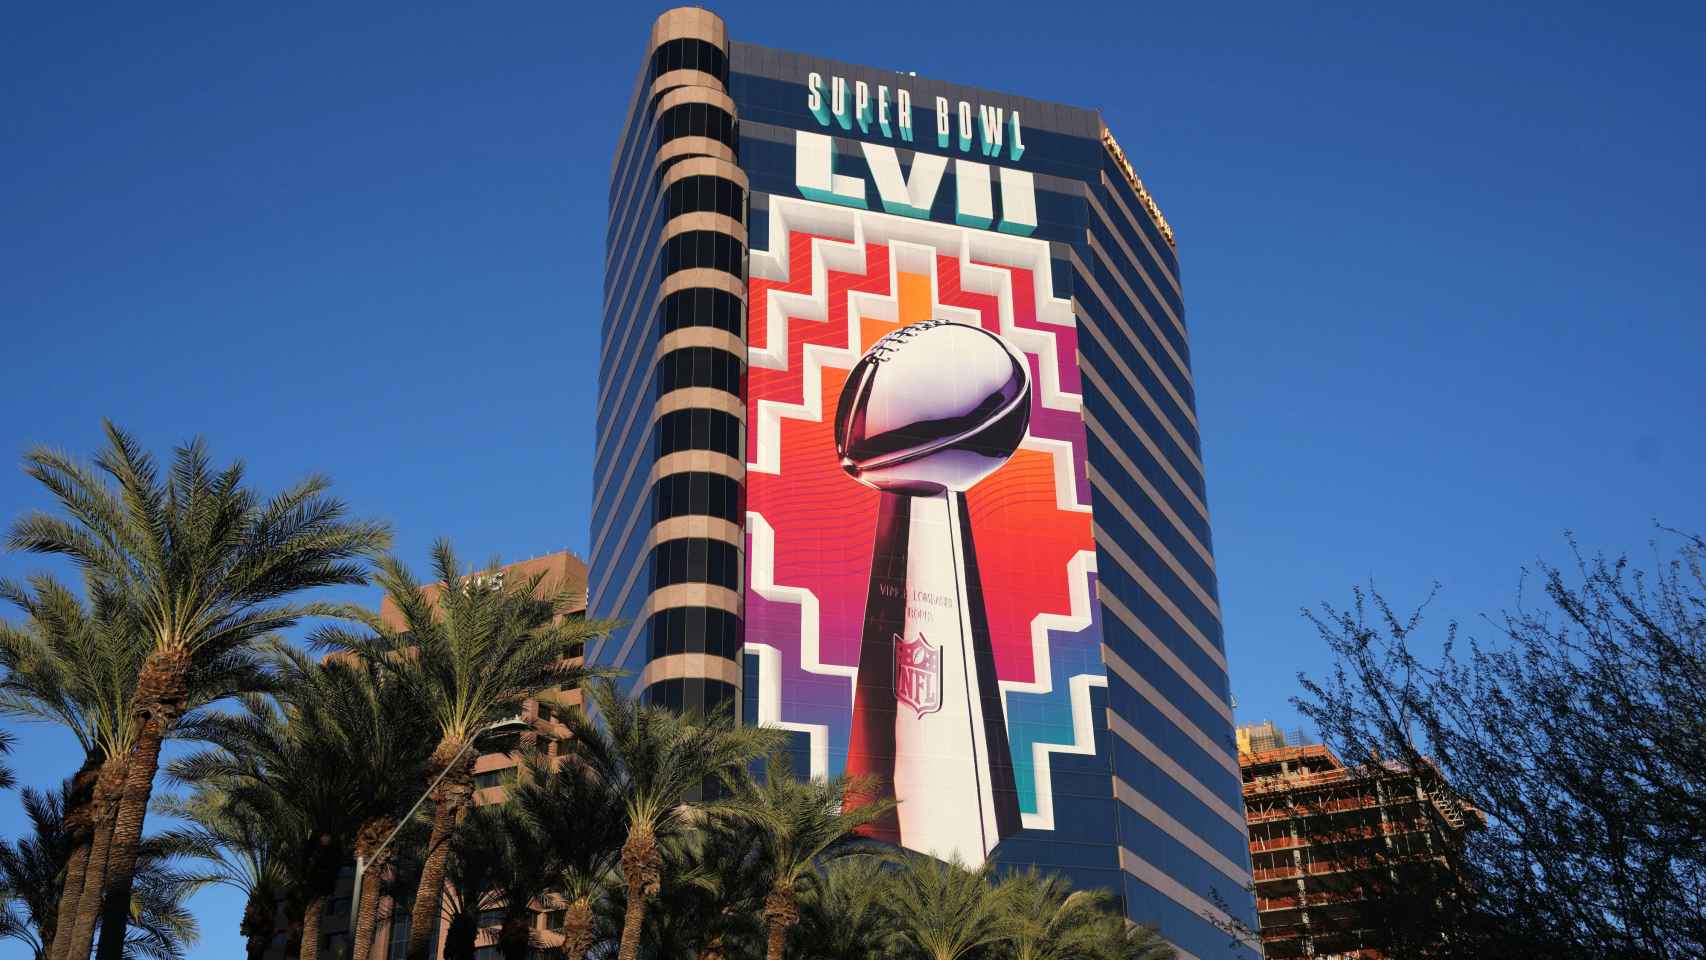 Anuncio de la Super Bowl LVII en el edificio de la Compañía de Servicios Públicos de Arizona